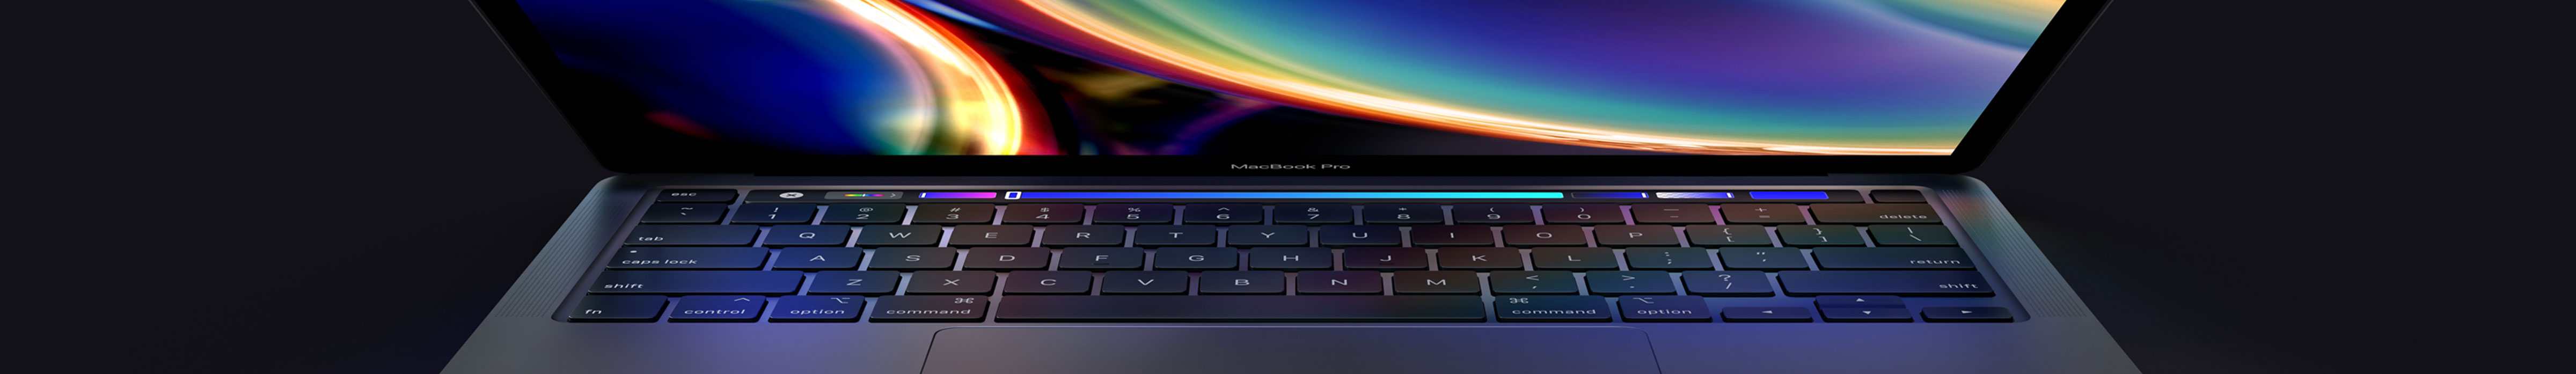 MacBook Pro 13-inch - nieuw met upgrades